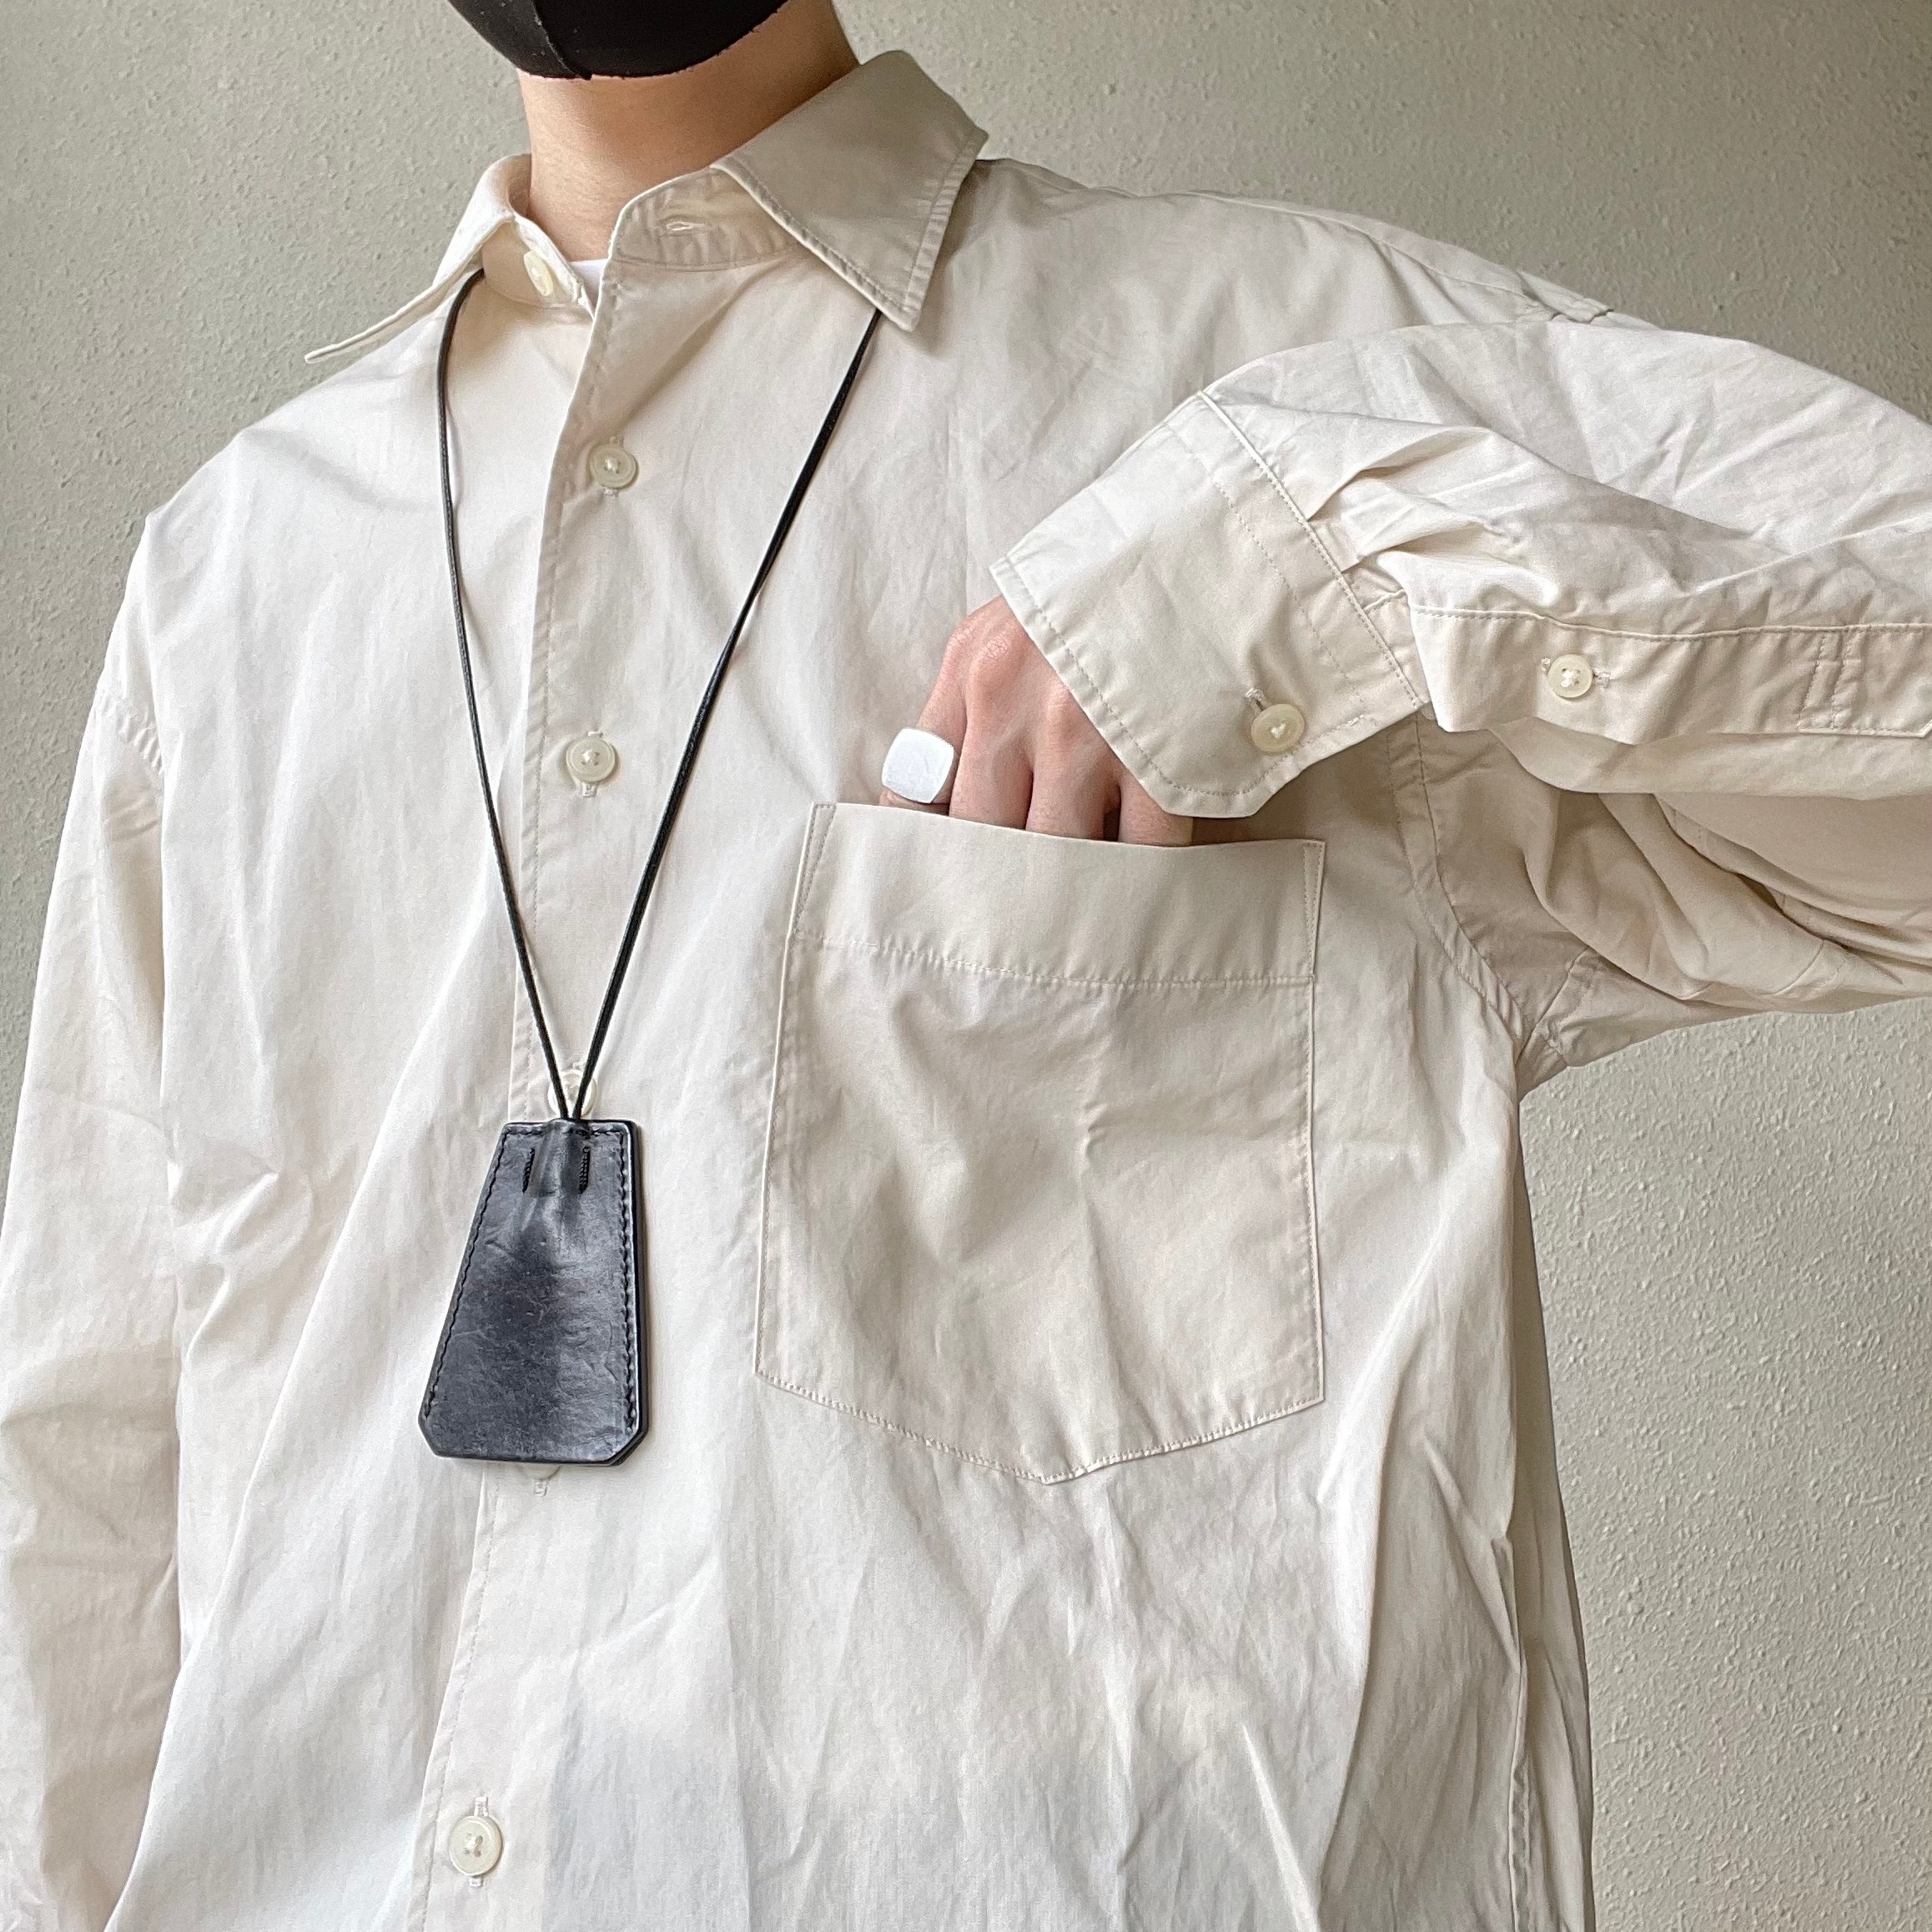 UNIQLO（ユニクロ）のおすすめのメンズアイテム「オーバーサイズシャツ（長袖）」